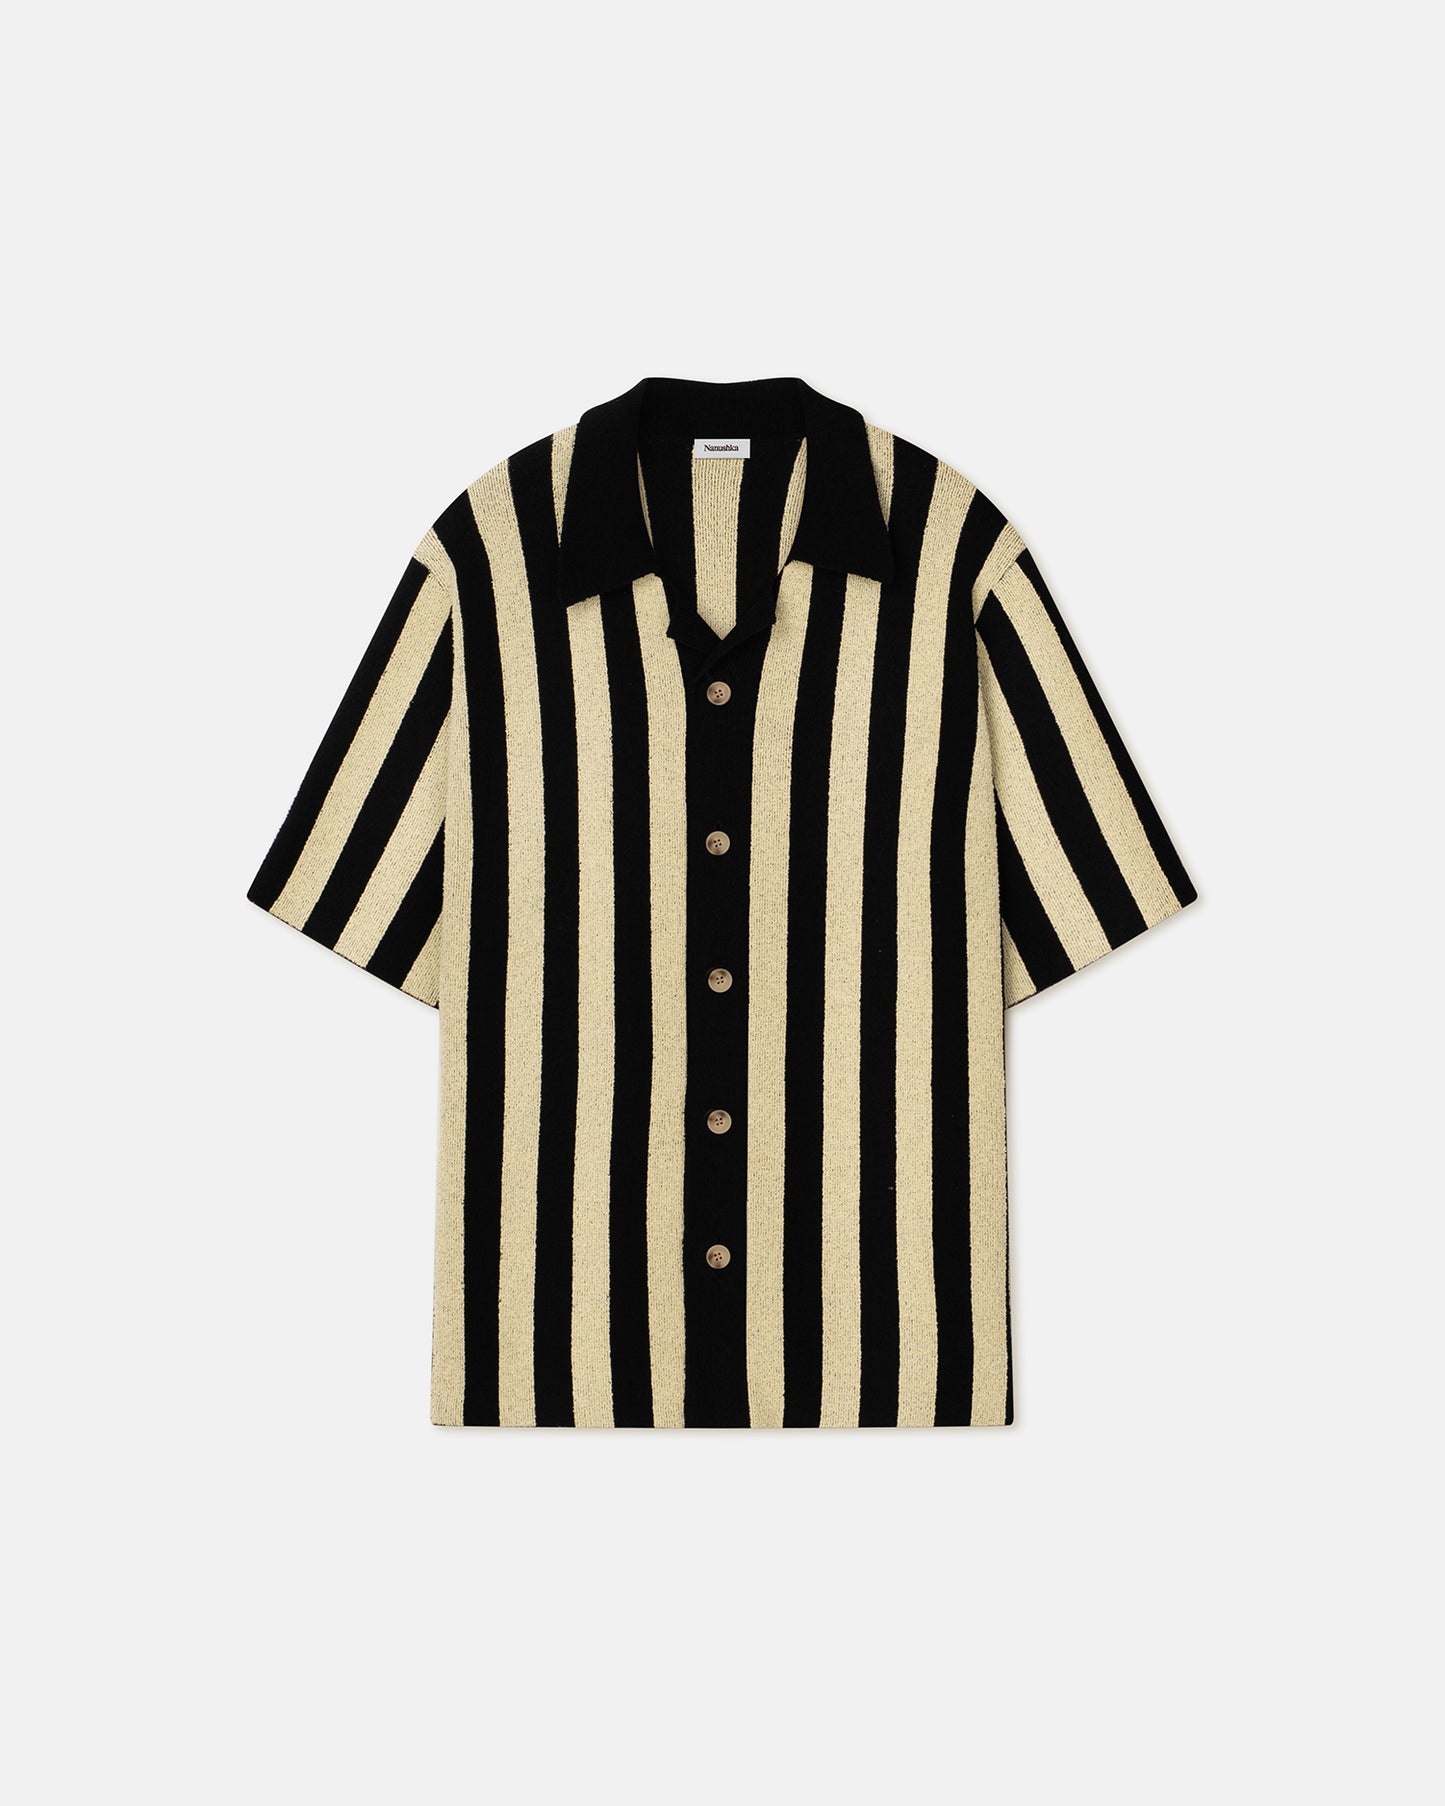 Ziko - Striped Terry-Knit Shirt - Pale Yellow/Black